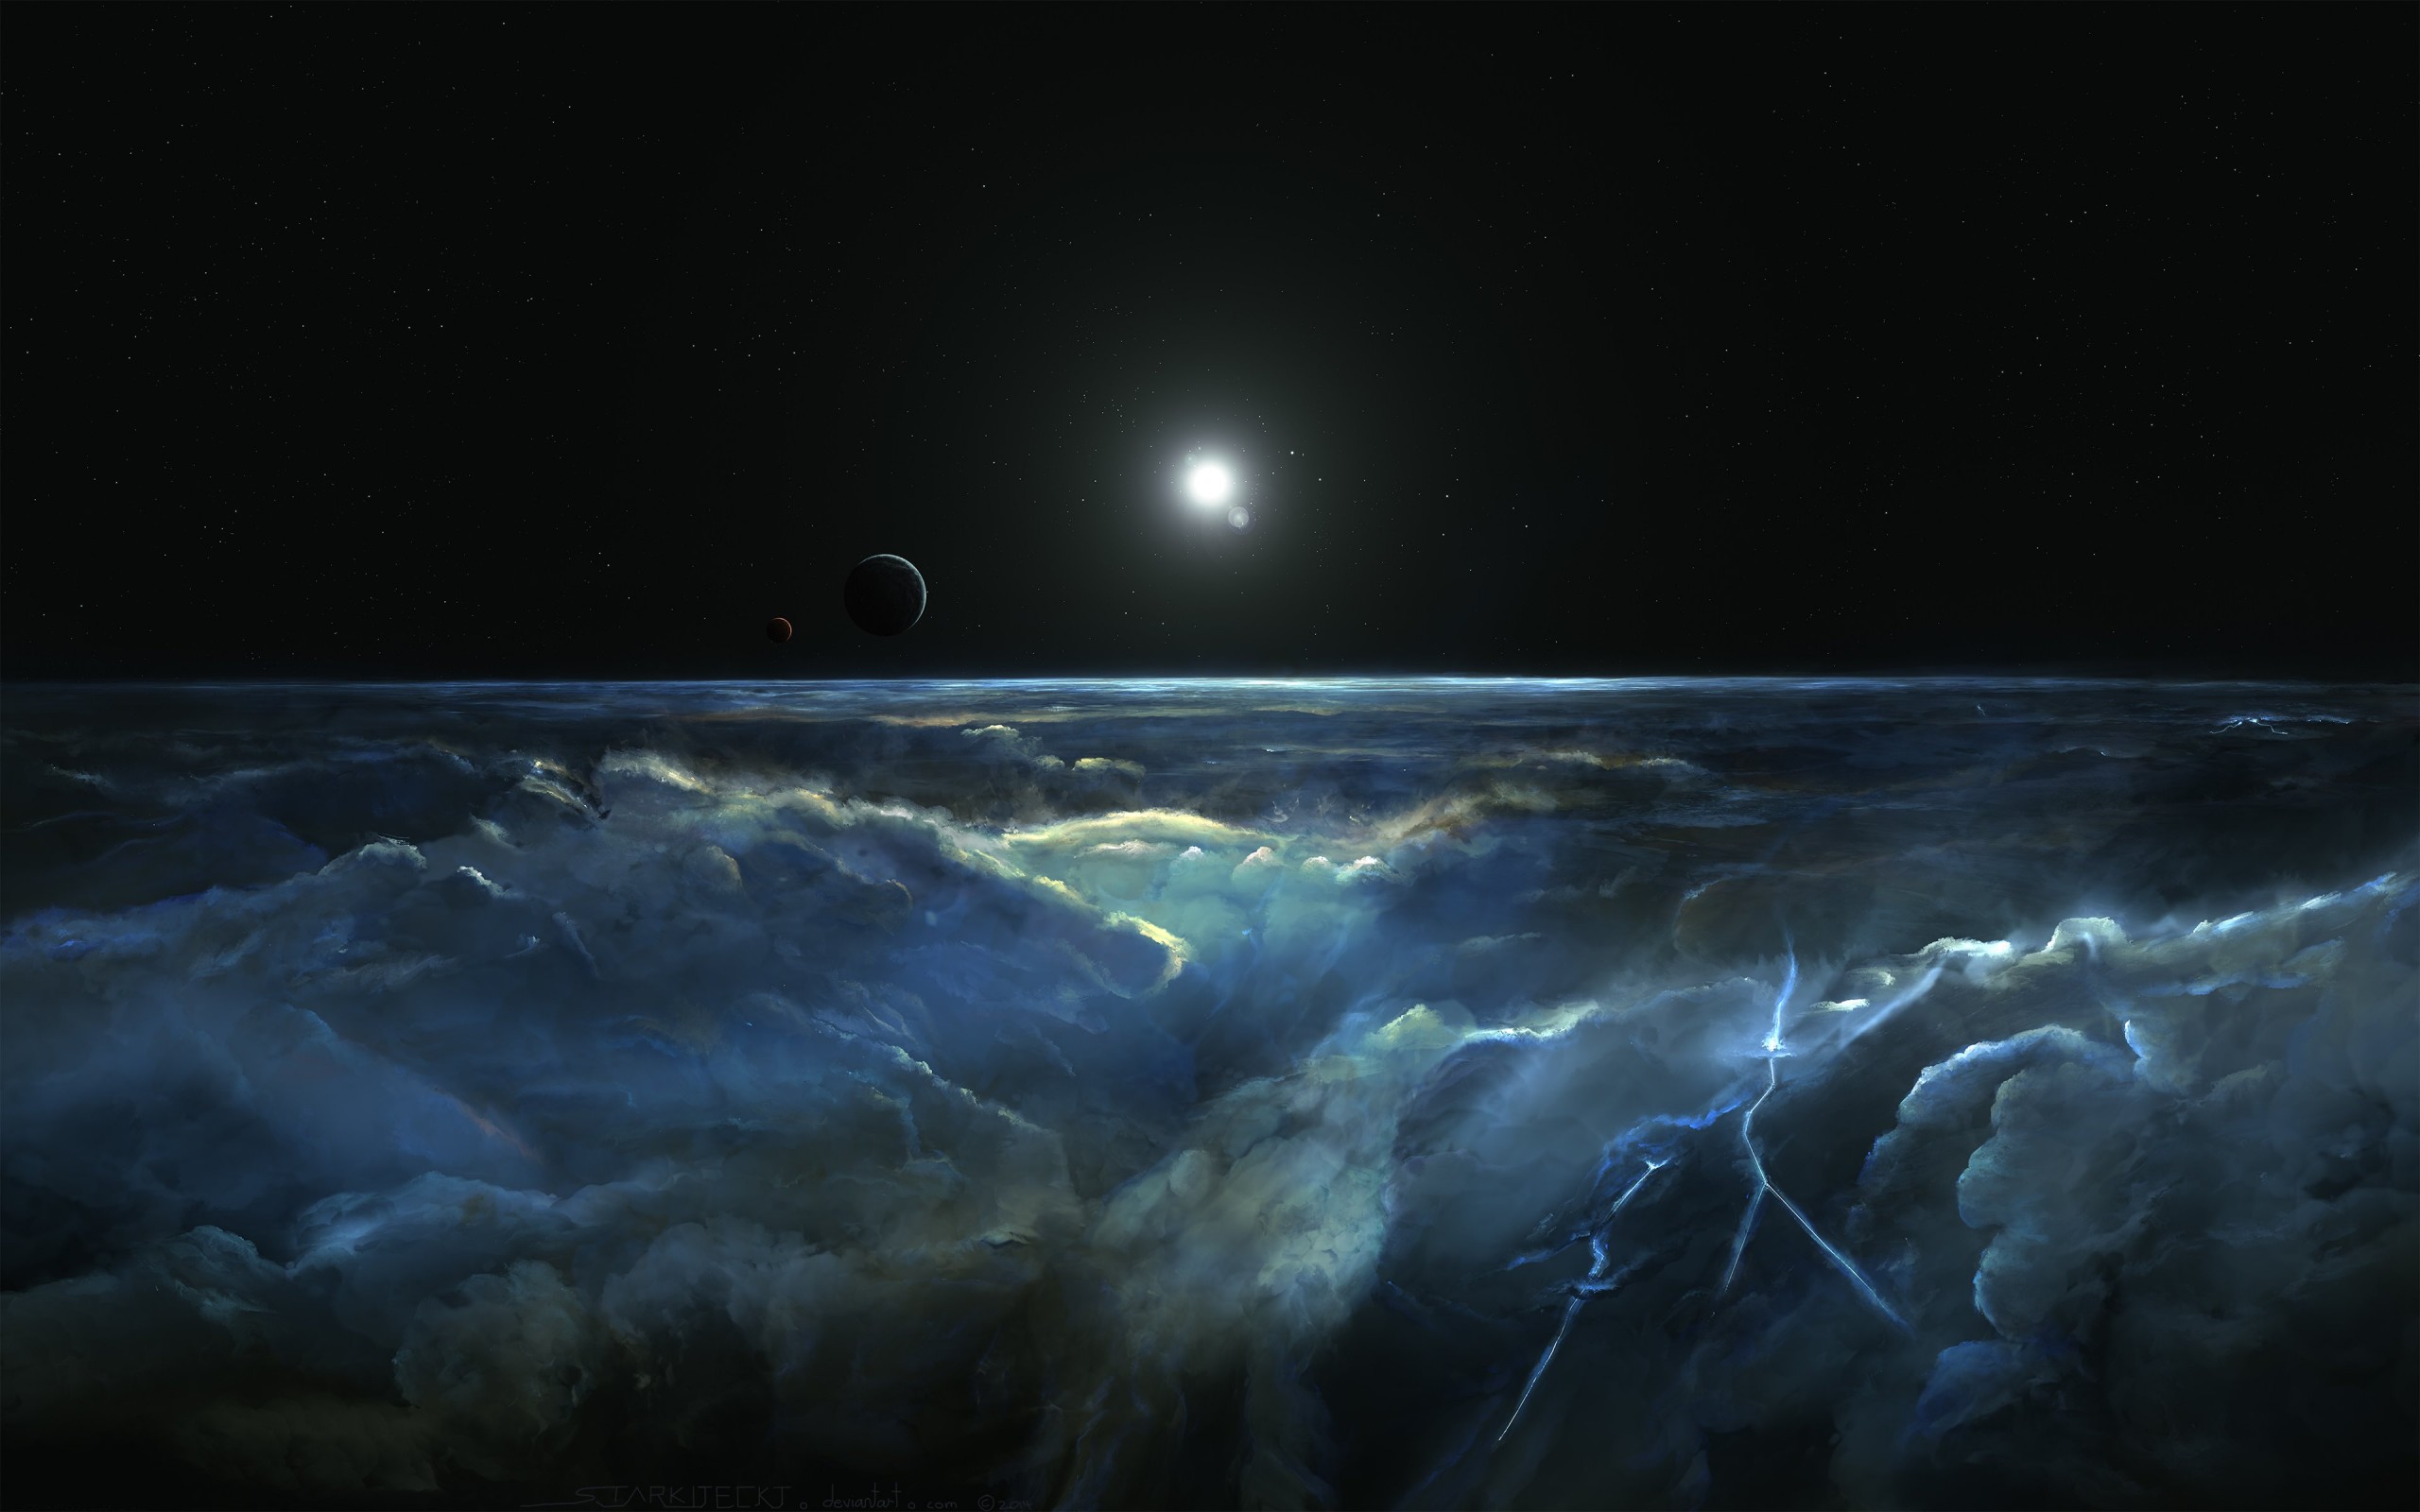 Stormy Atmosphere of Merphlyn Wallpaper for Desktop 2560x1600